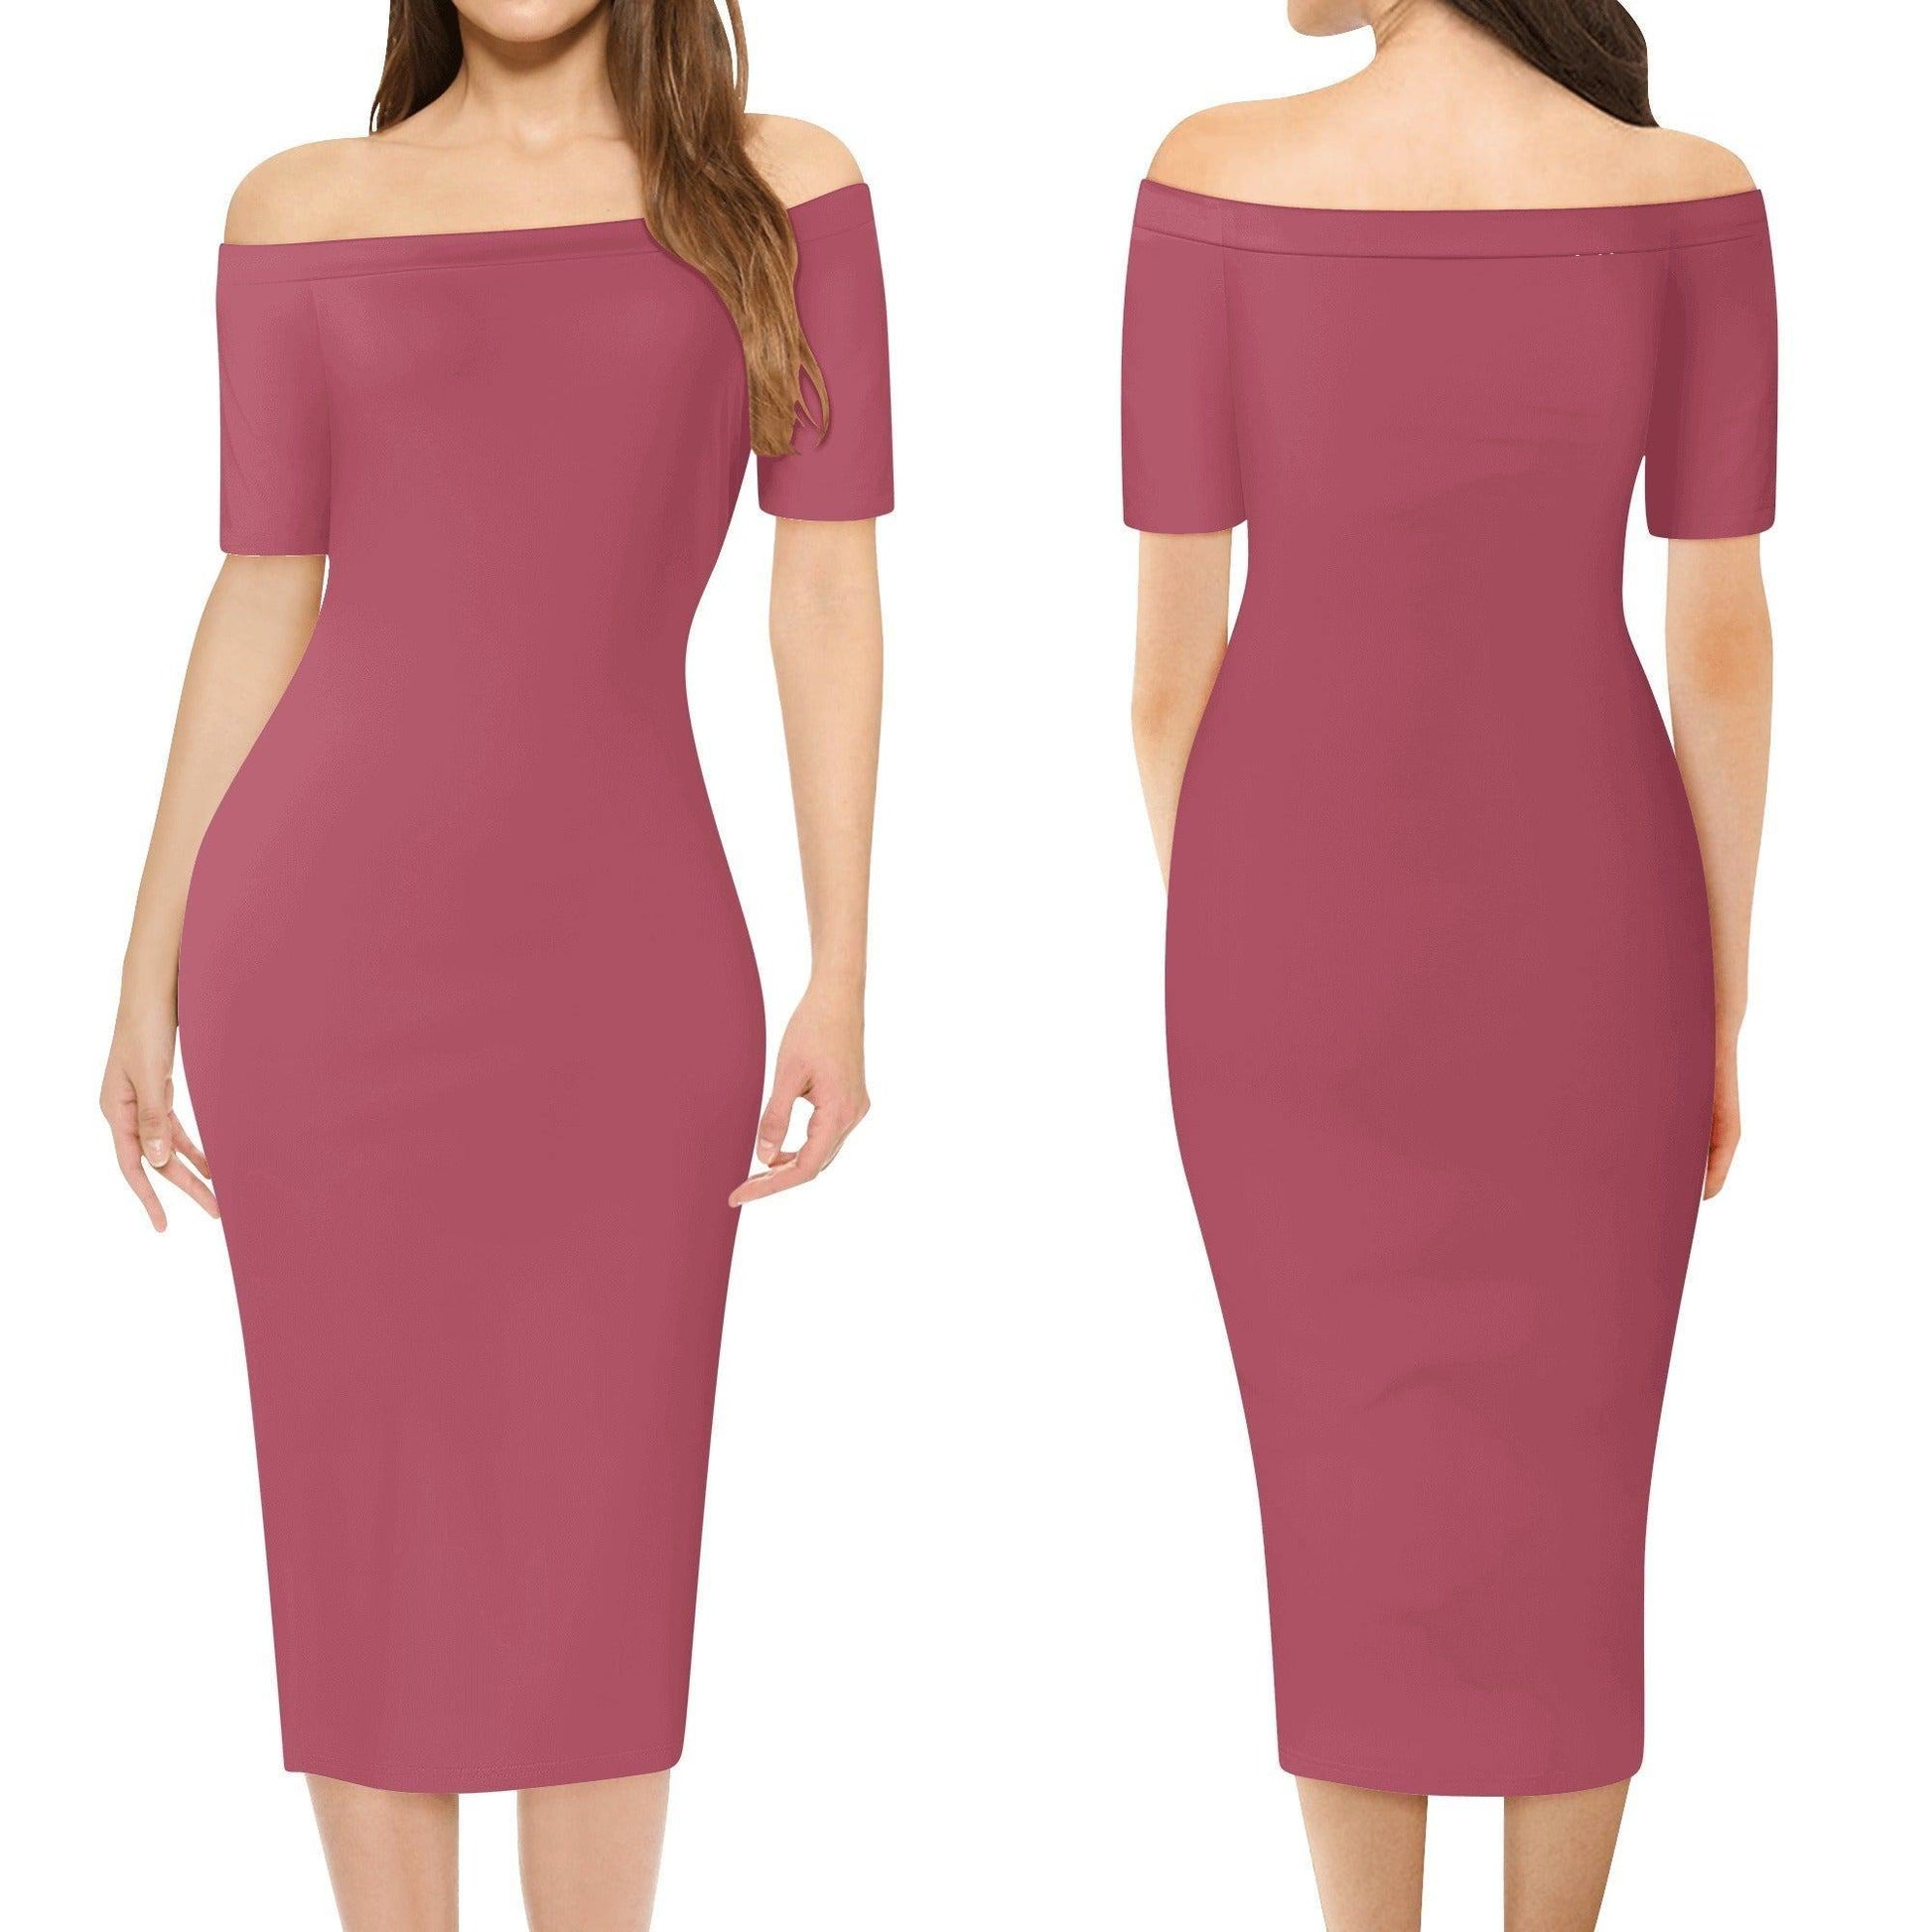 Hippie Pink Off-Shoulder-Kleid -- Hippie Pink Off-Shoulder-Kleid - undefined Off-Shoulder-Kleid | JLR Design